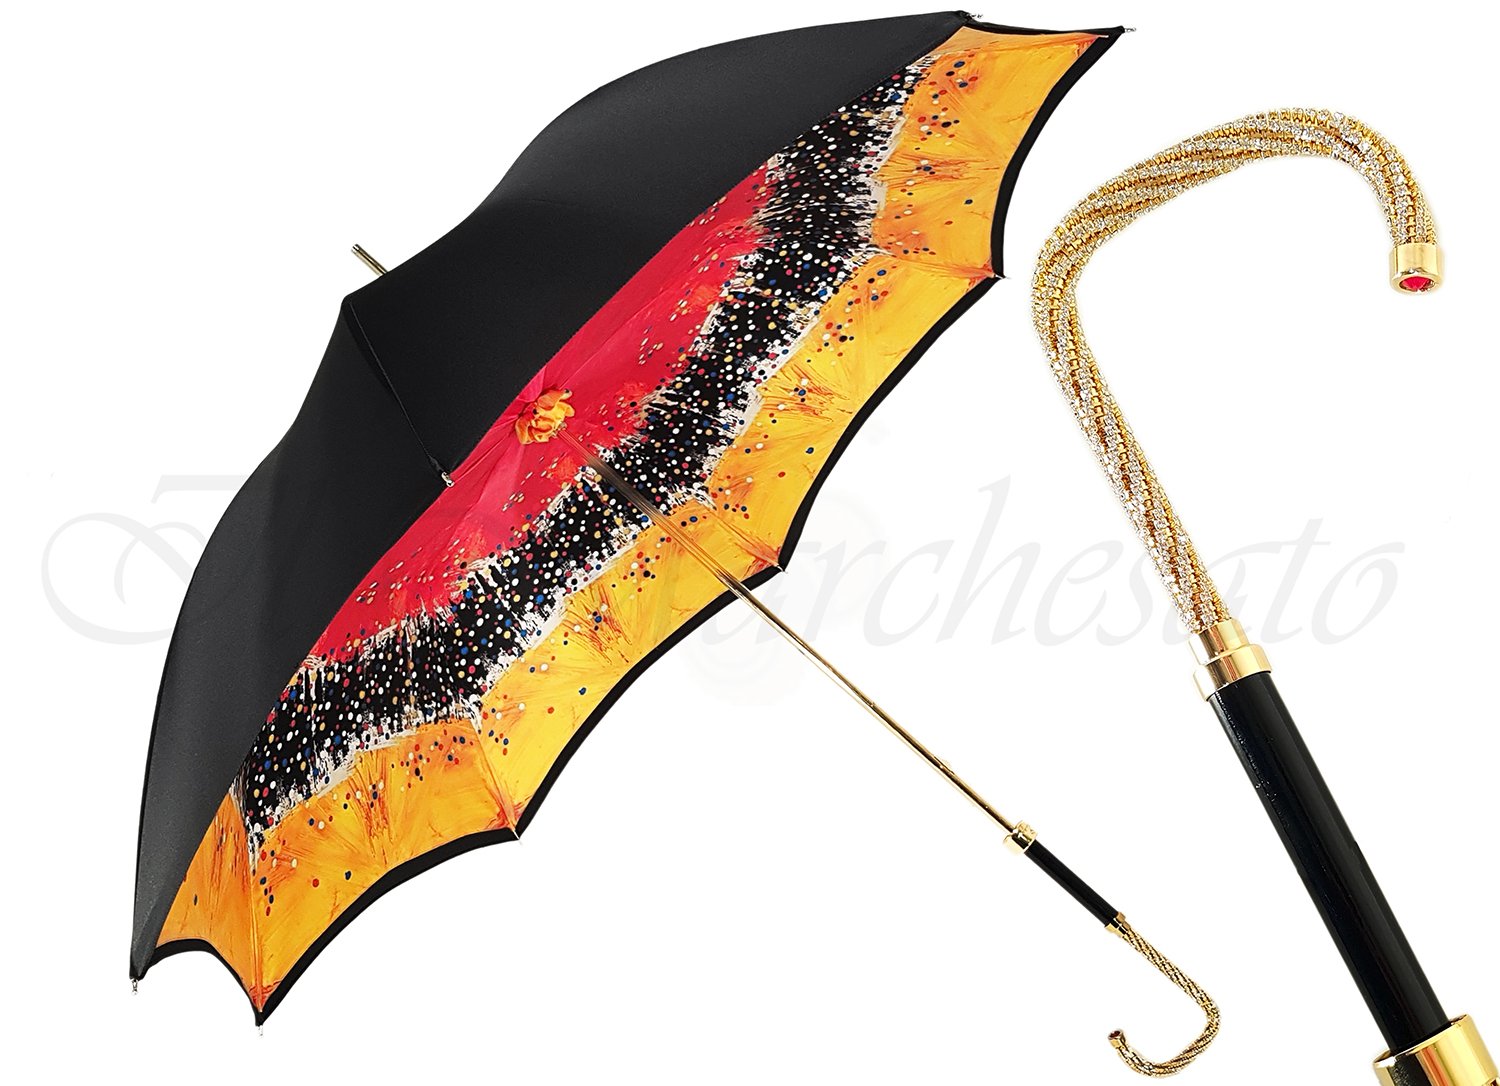 Beautiful Double Canopy Umbrella in a Parti-Coloured Design - il-marchesato